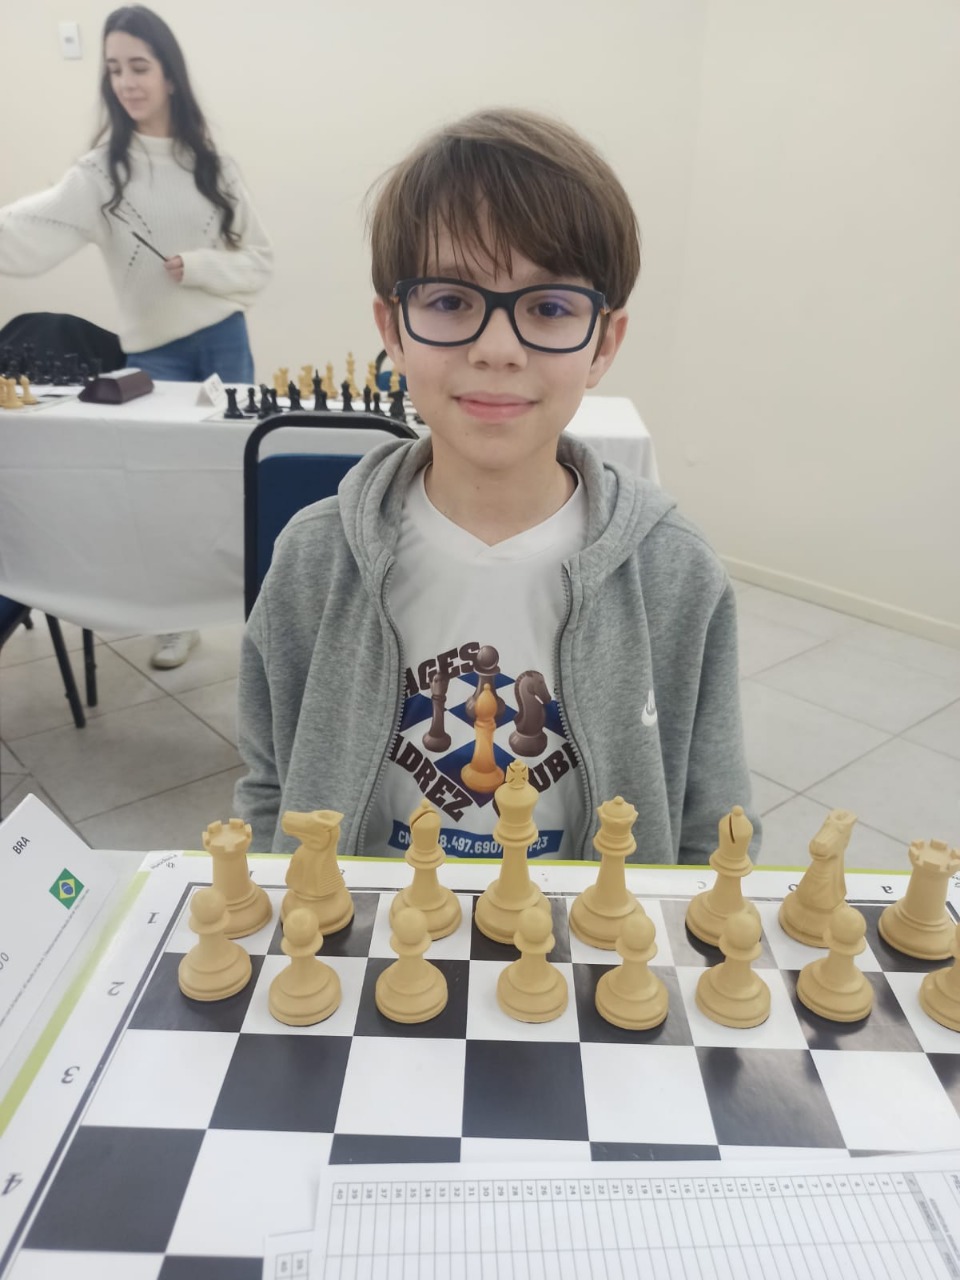 Federação Catarinense de Xadrez - FCX - (Novidades) - Enxadrista de Lages é  Candidato à Mestre com apenas 10 anos